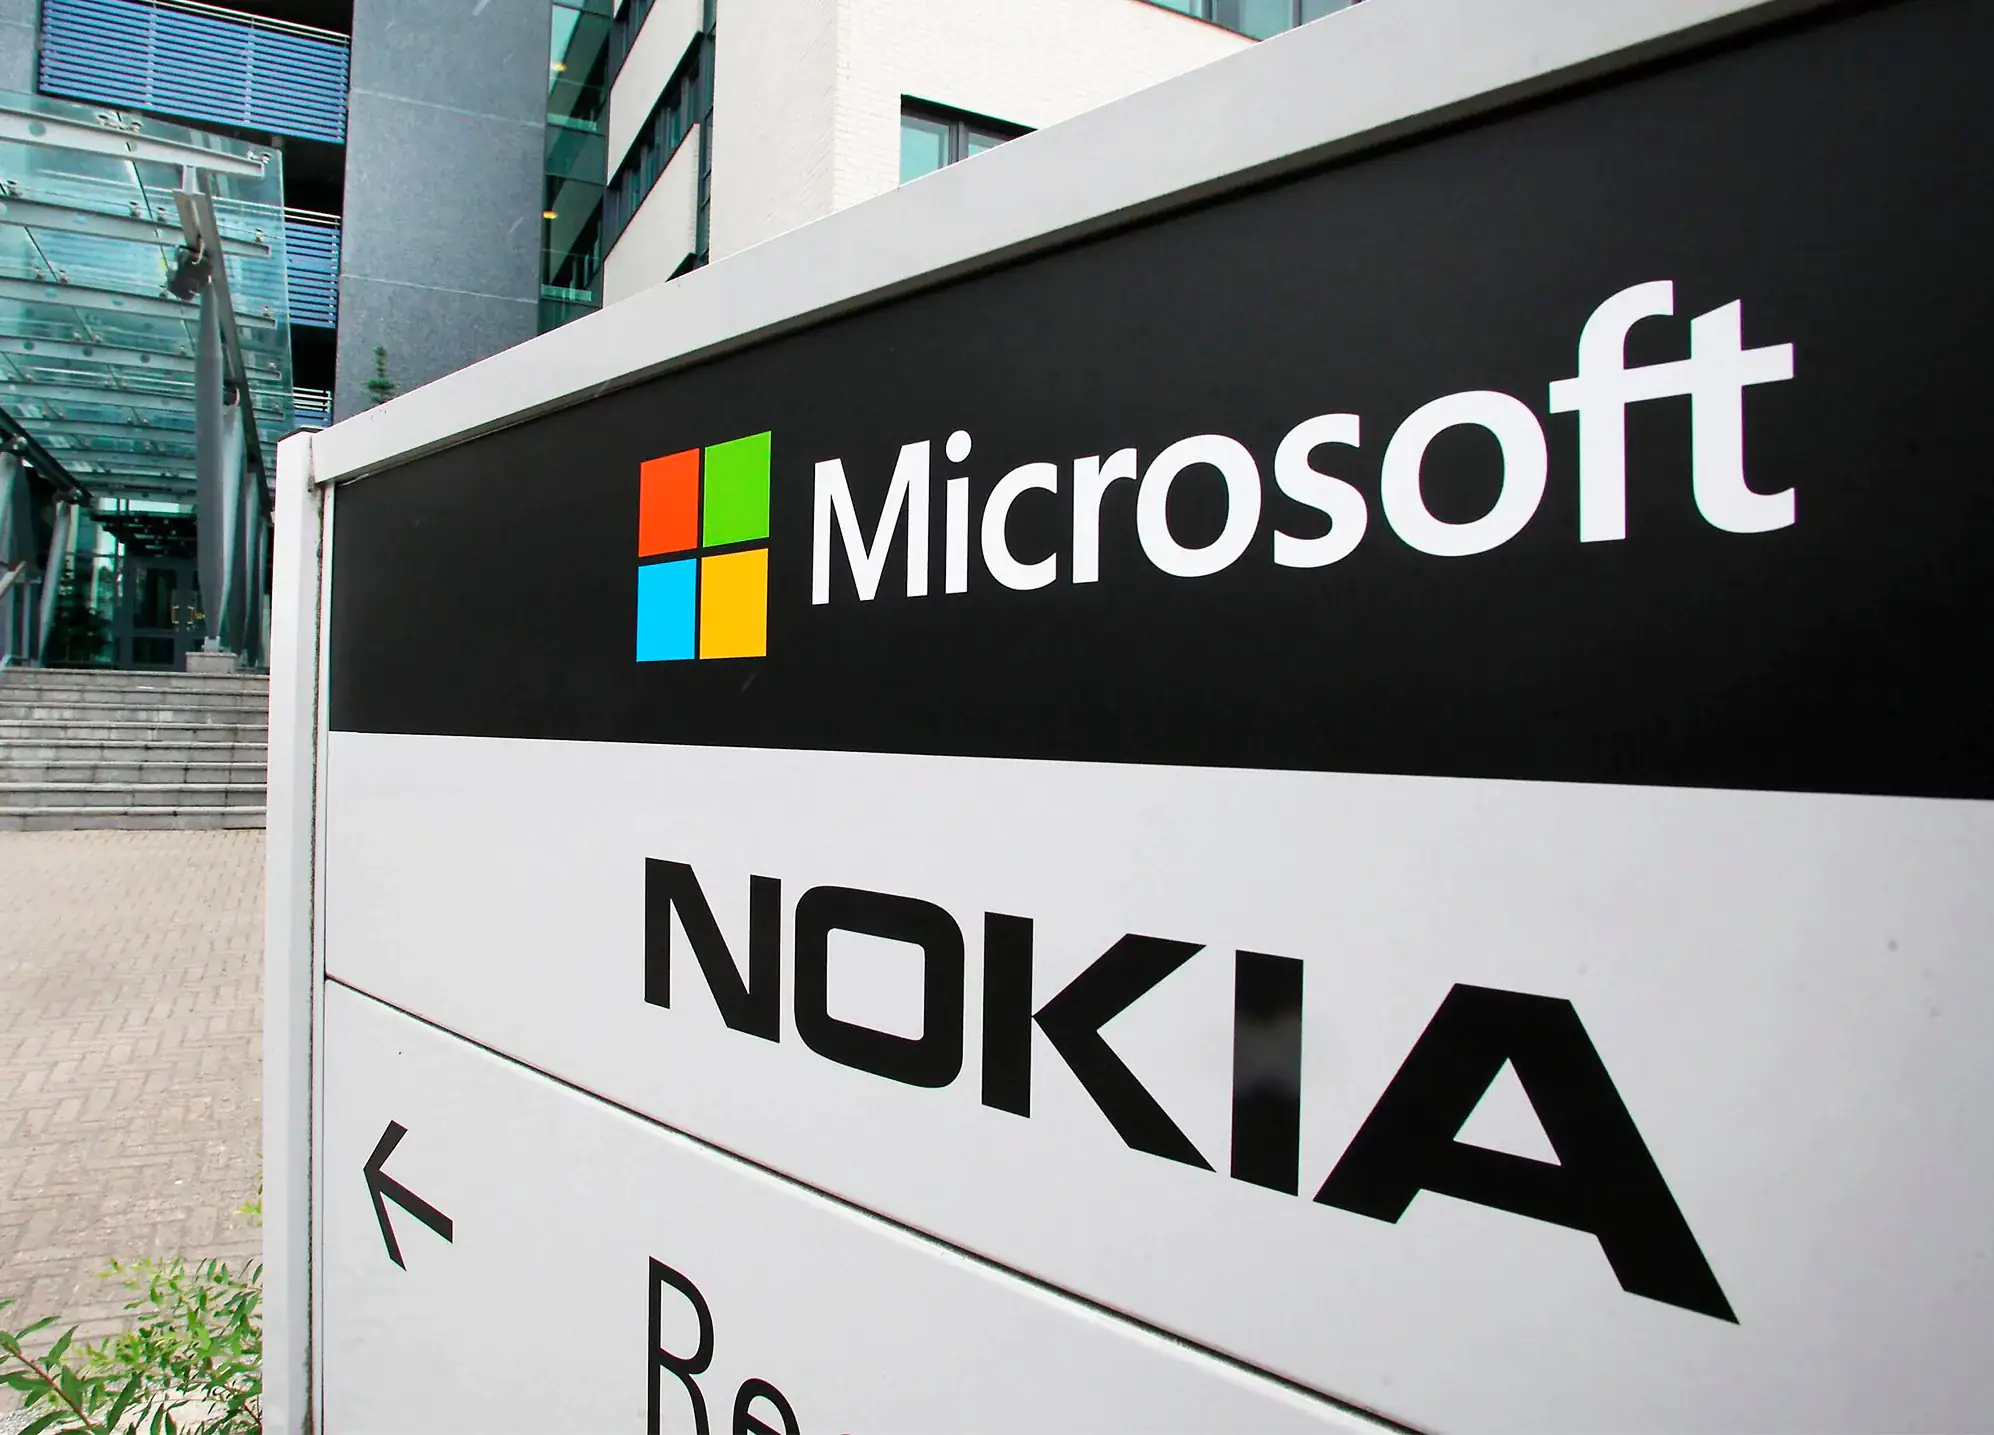 Nokia to Microsoft